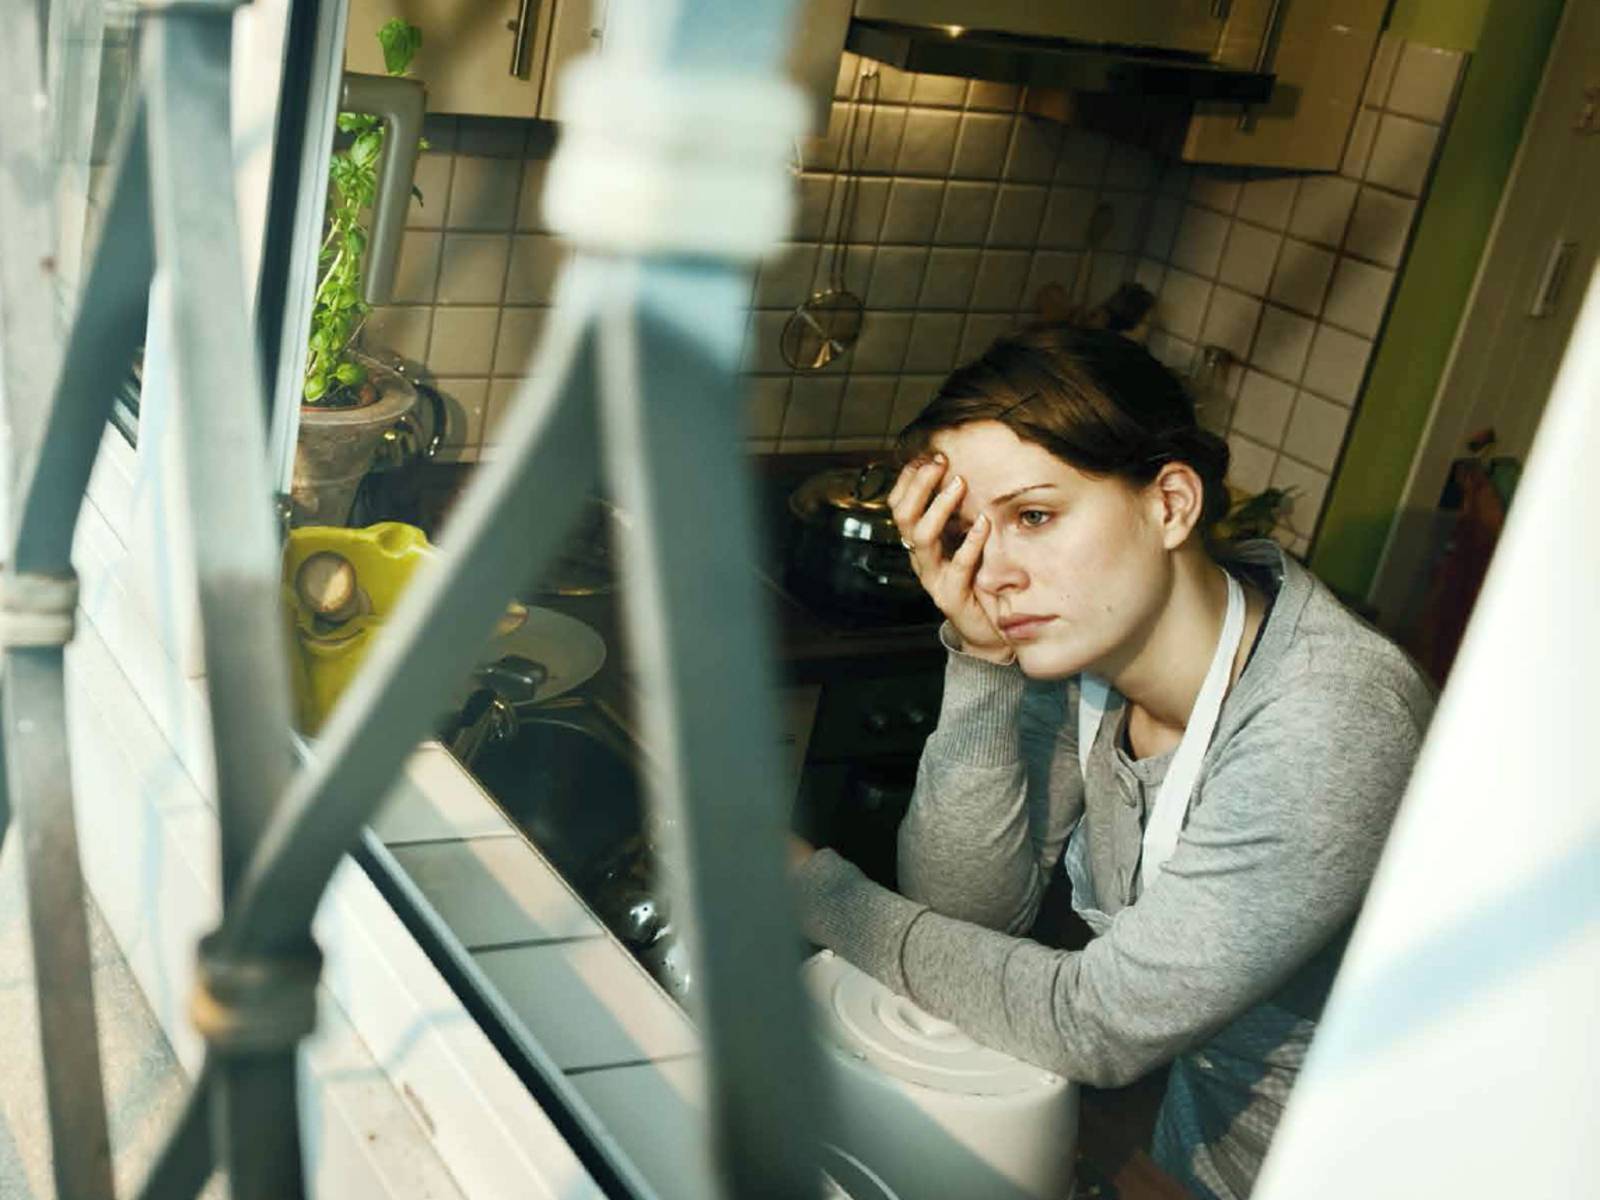 Eine Frau schaut mit leerem Blick aus einem Küchenfenster. Das Fenster ist von außen vergittert.